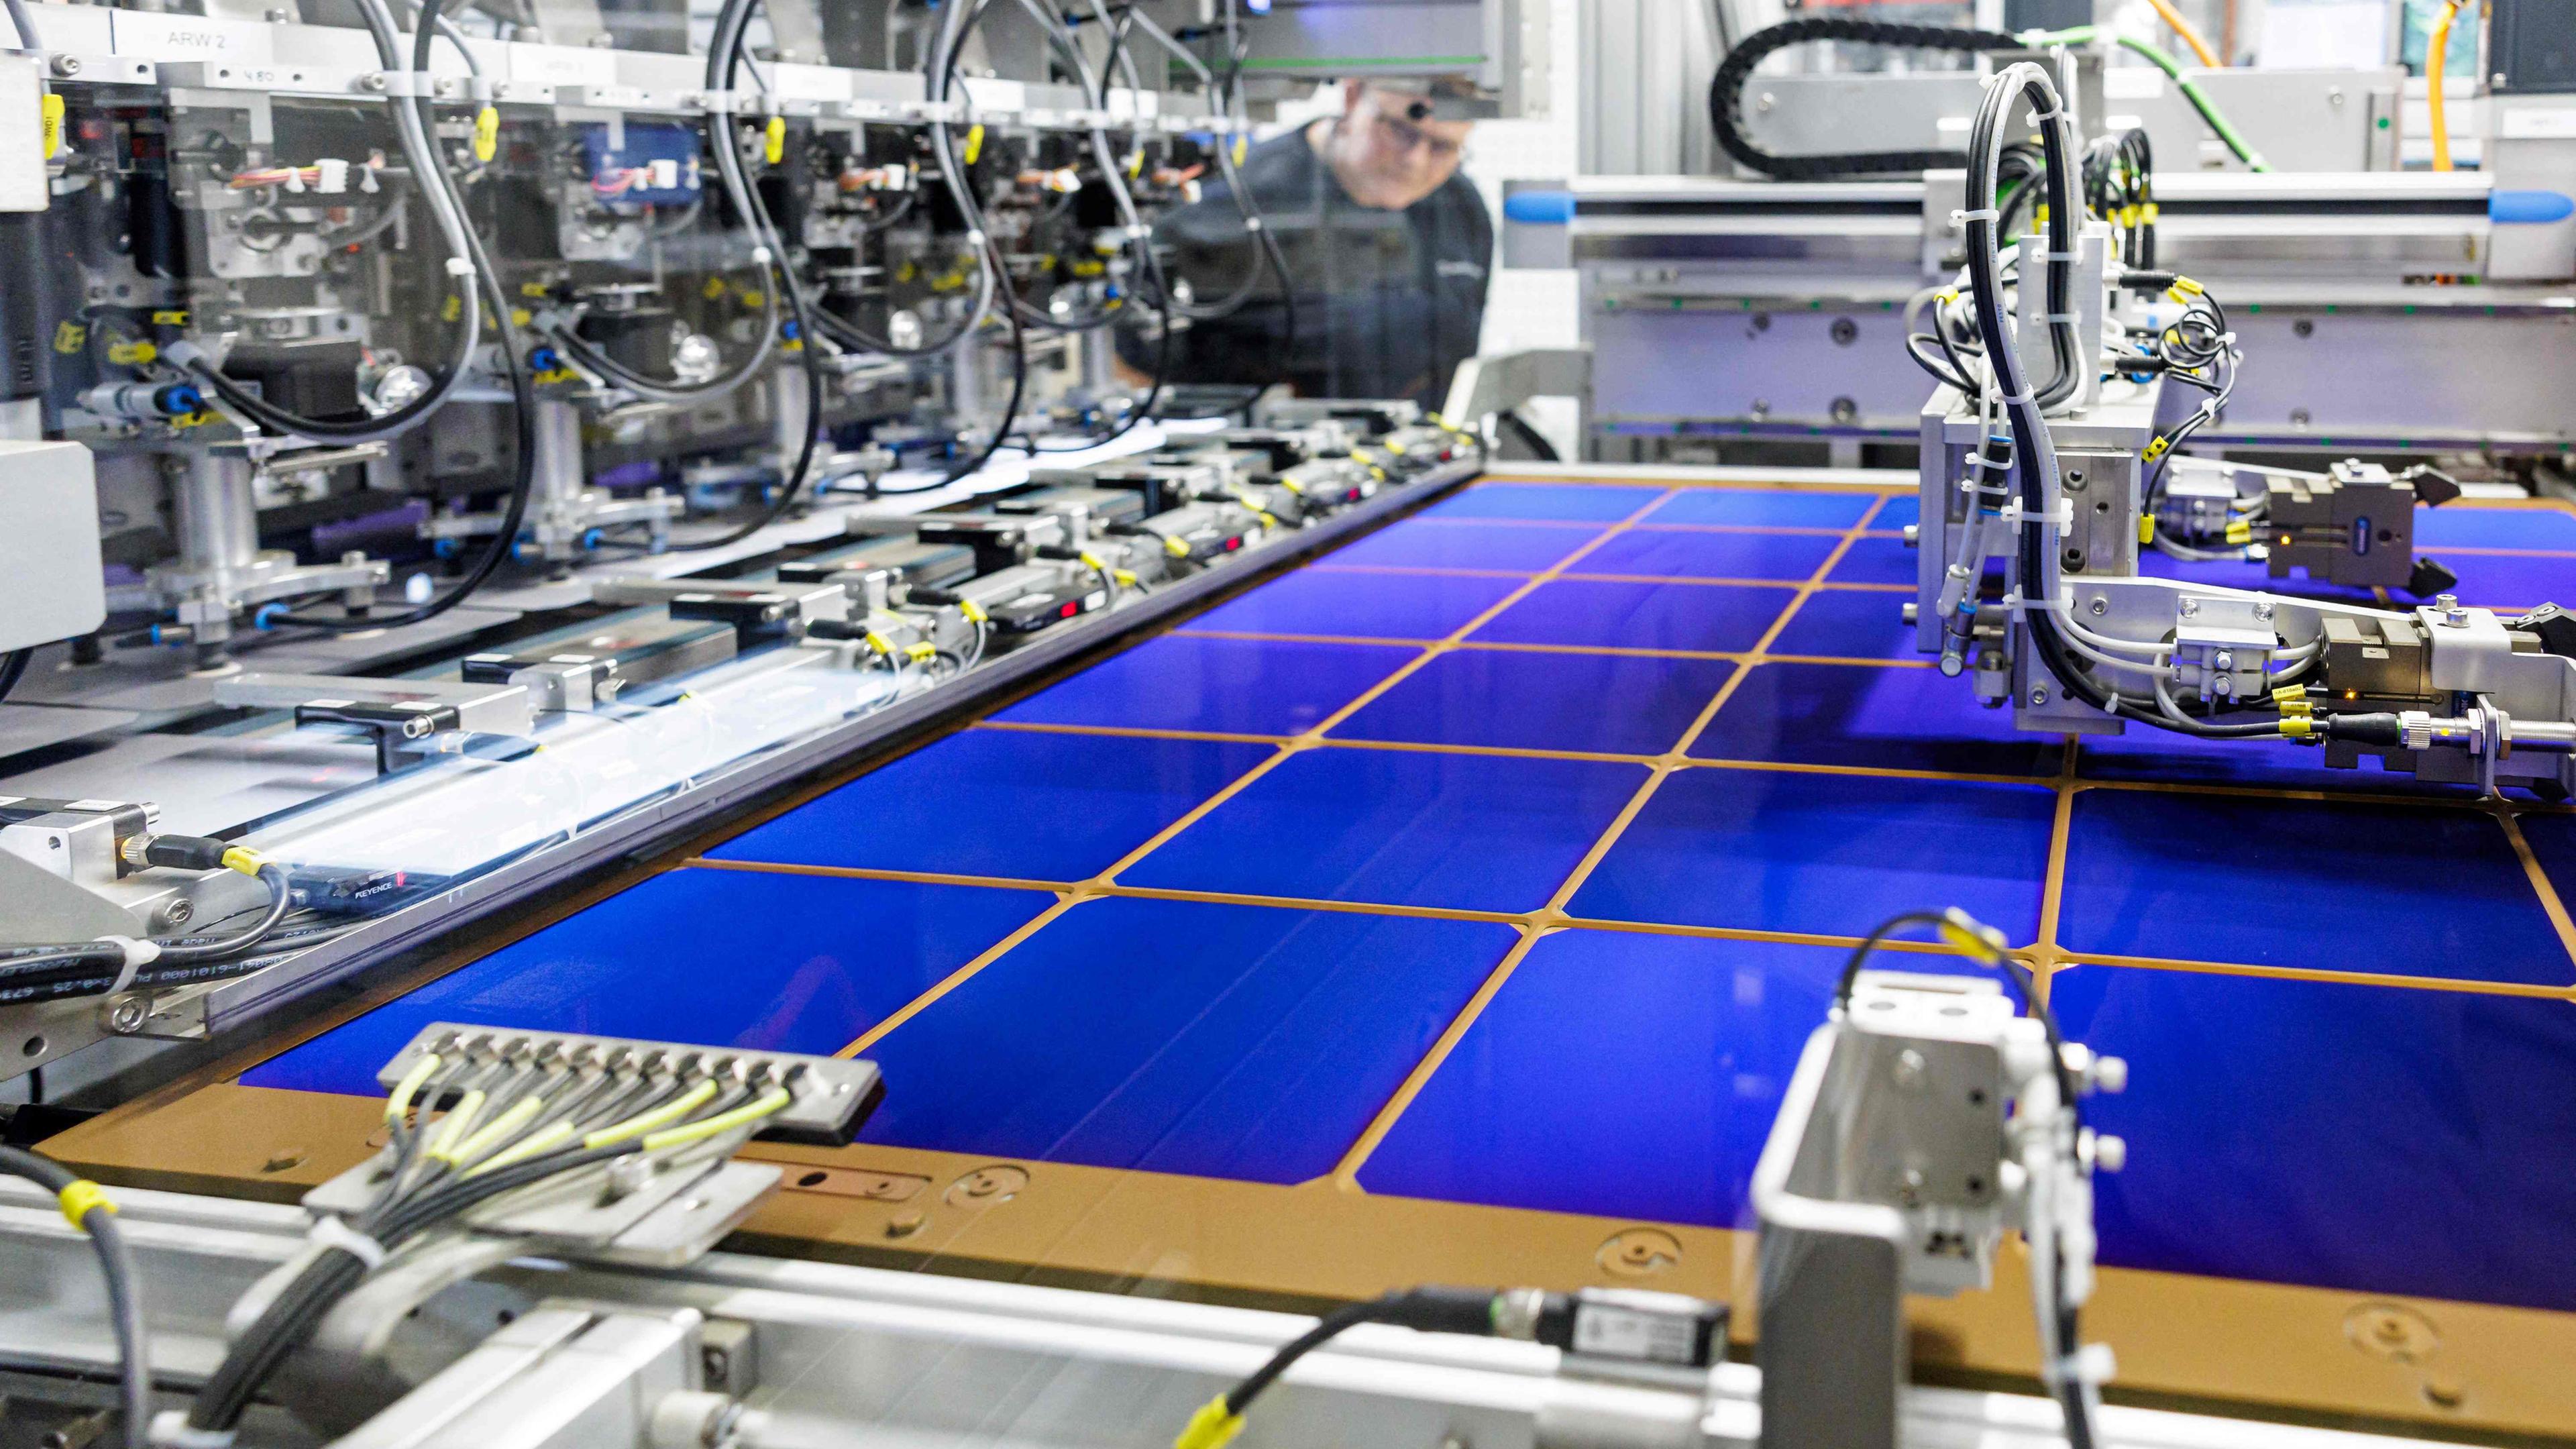 Ein Mitarbeiter überwacht den Produktionsprozess von Solarzellen an einer Maschine im Solarzellenwerk des Schweizer Konzerns Meyer Burger im ostdeutschen Bitterfeld-Wolfen.